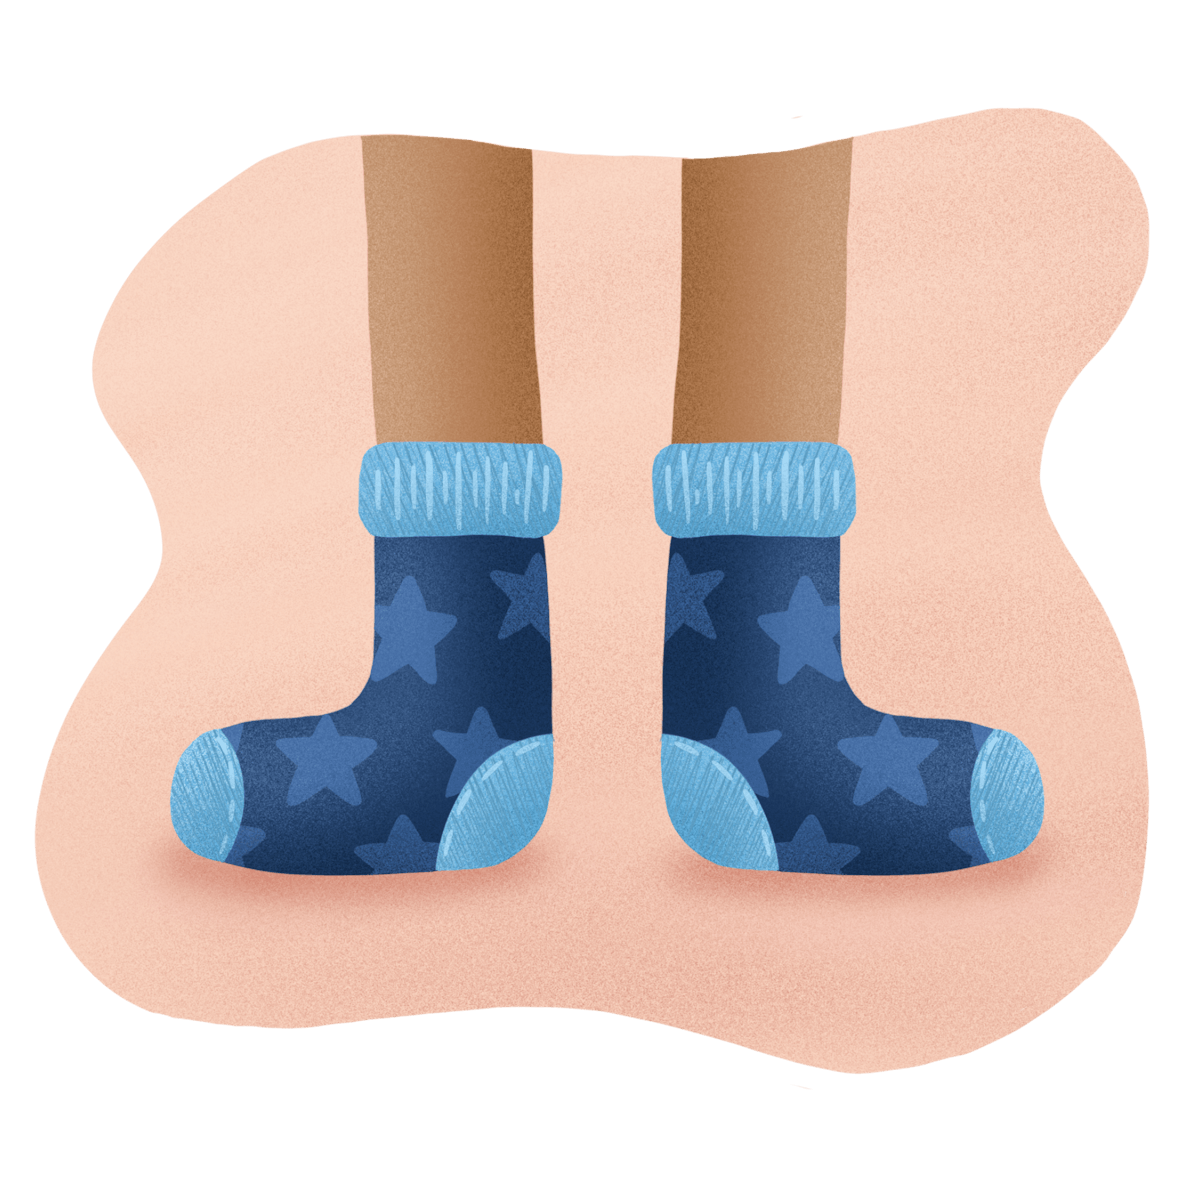  Blue Star socks for national sock day